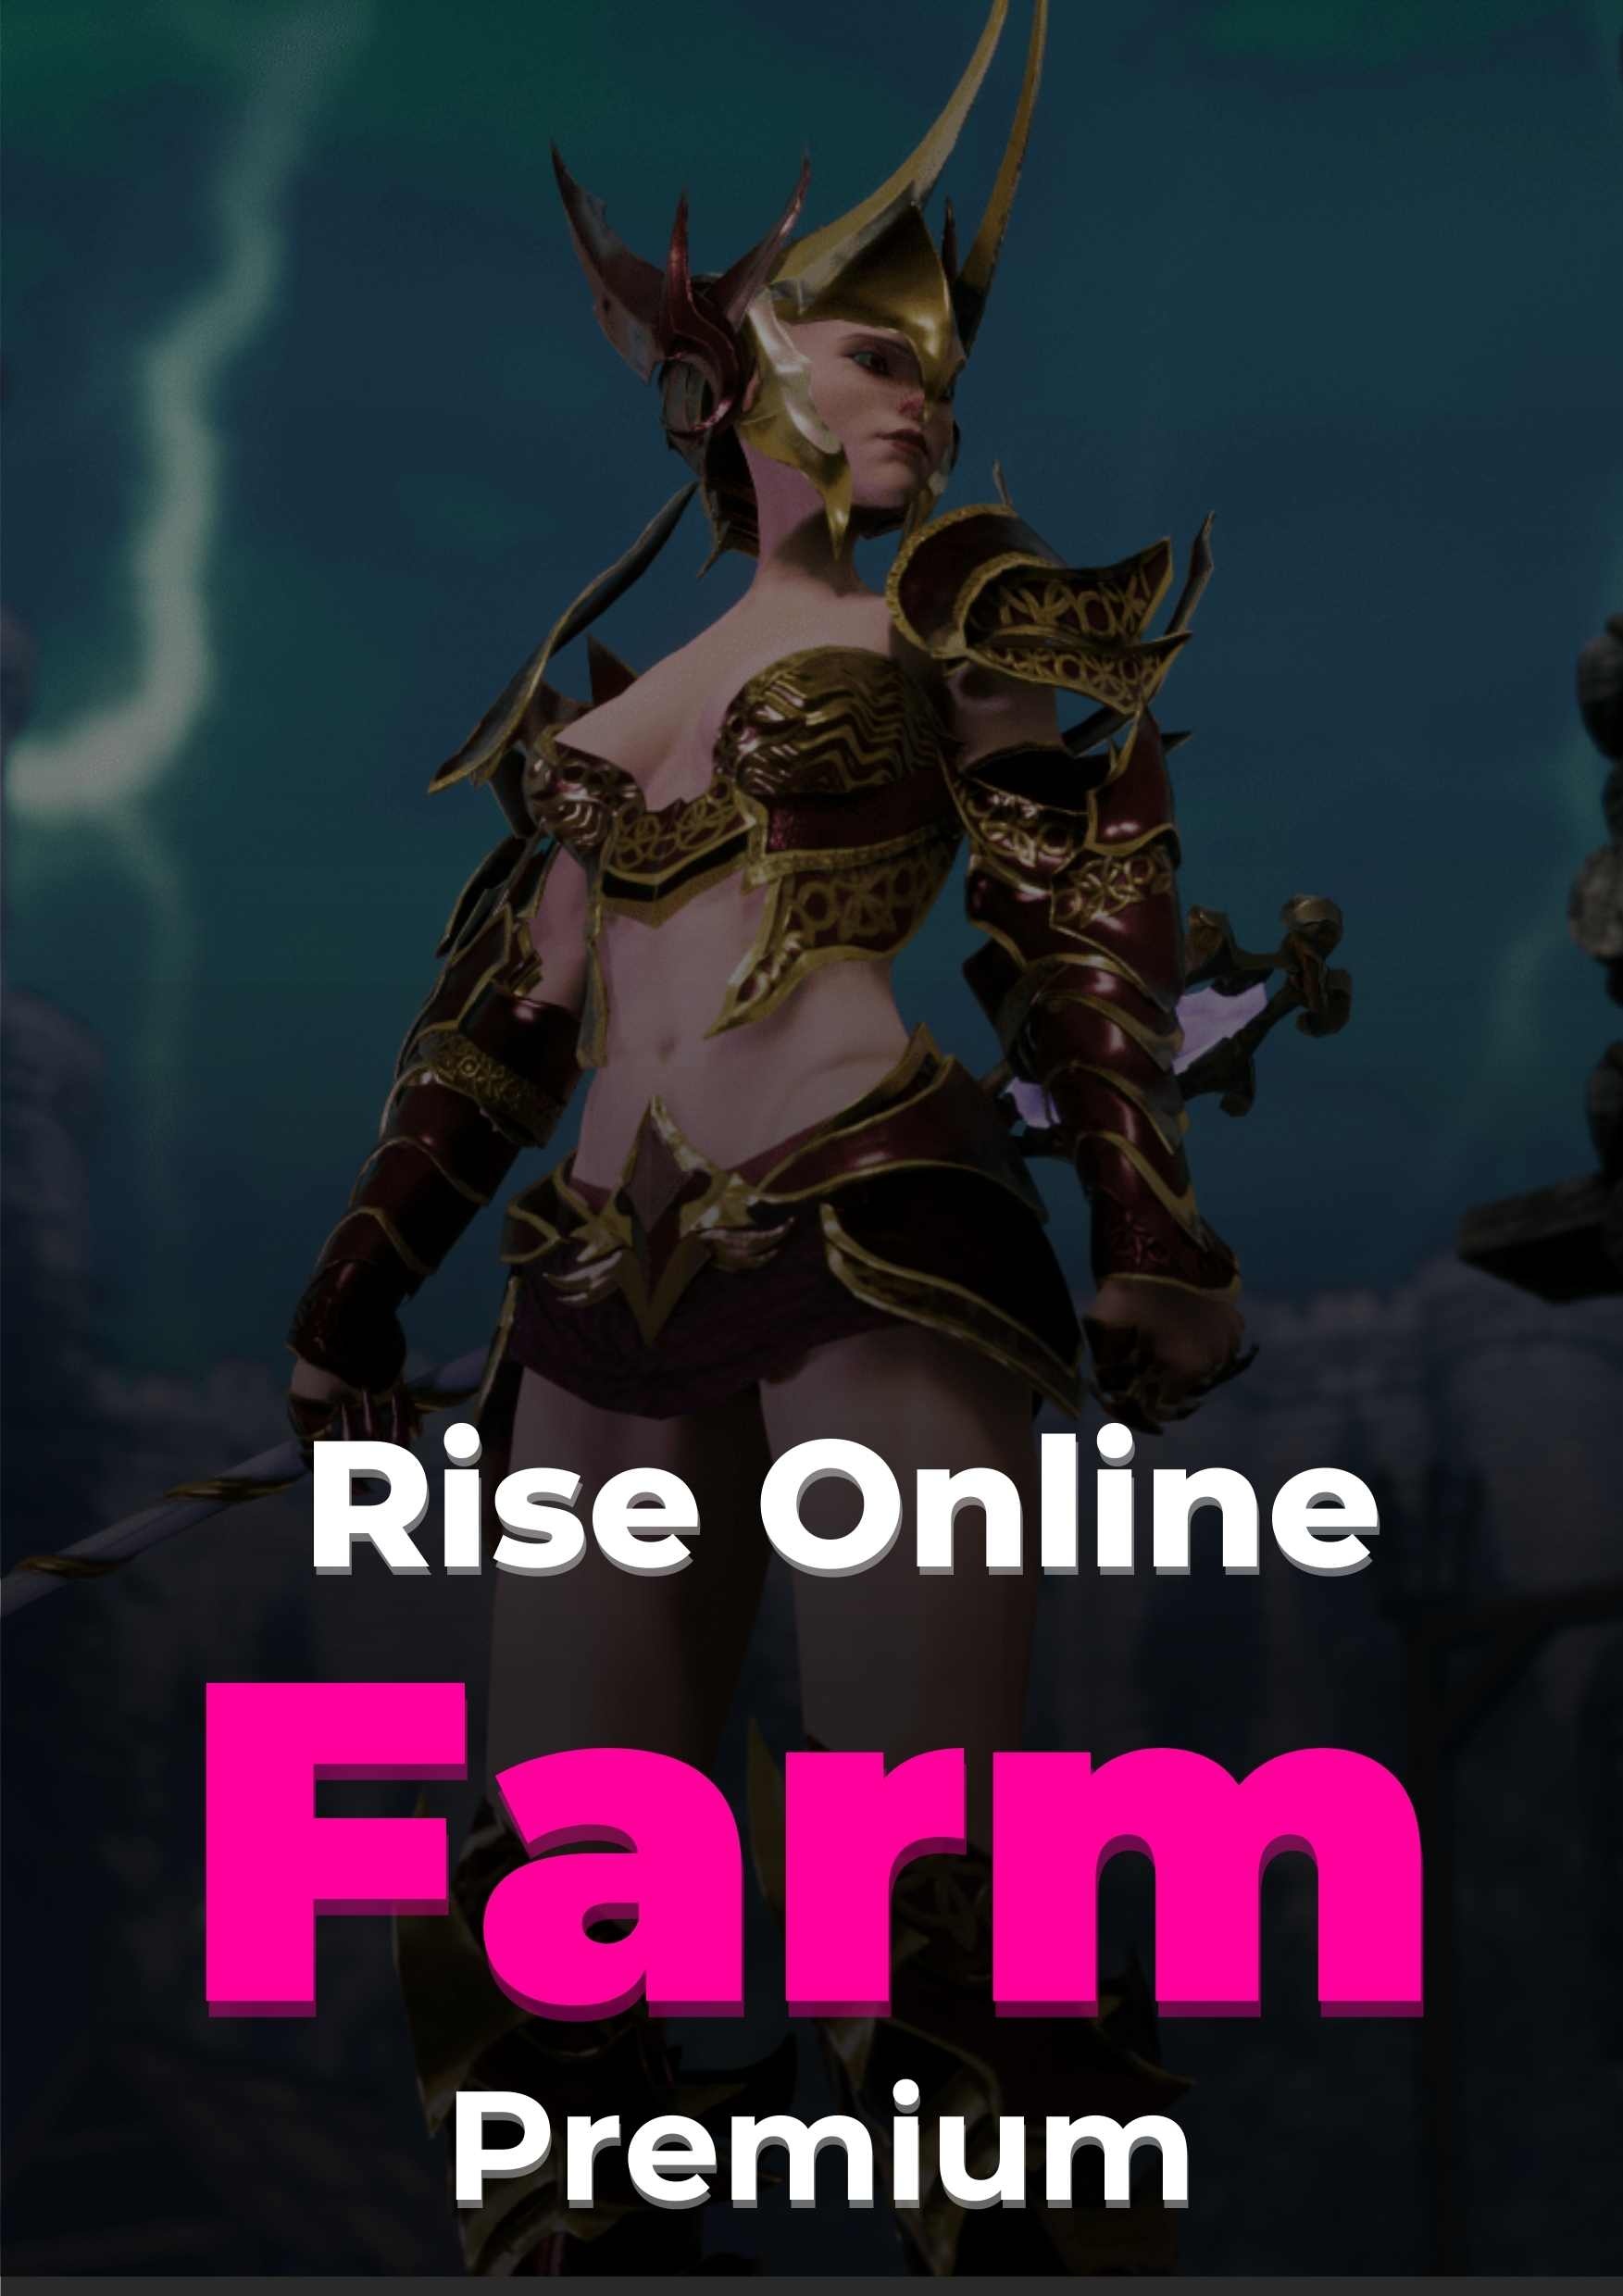 Rise Online Farm Premium